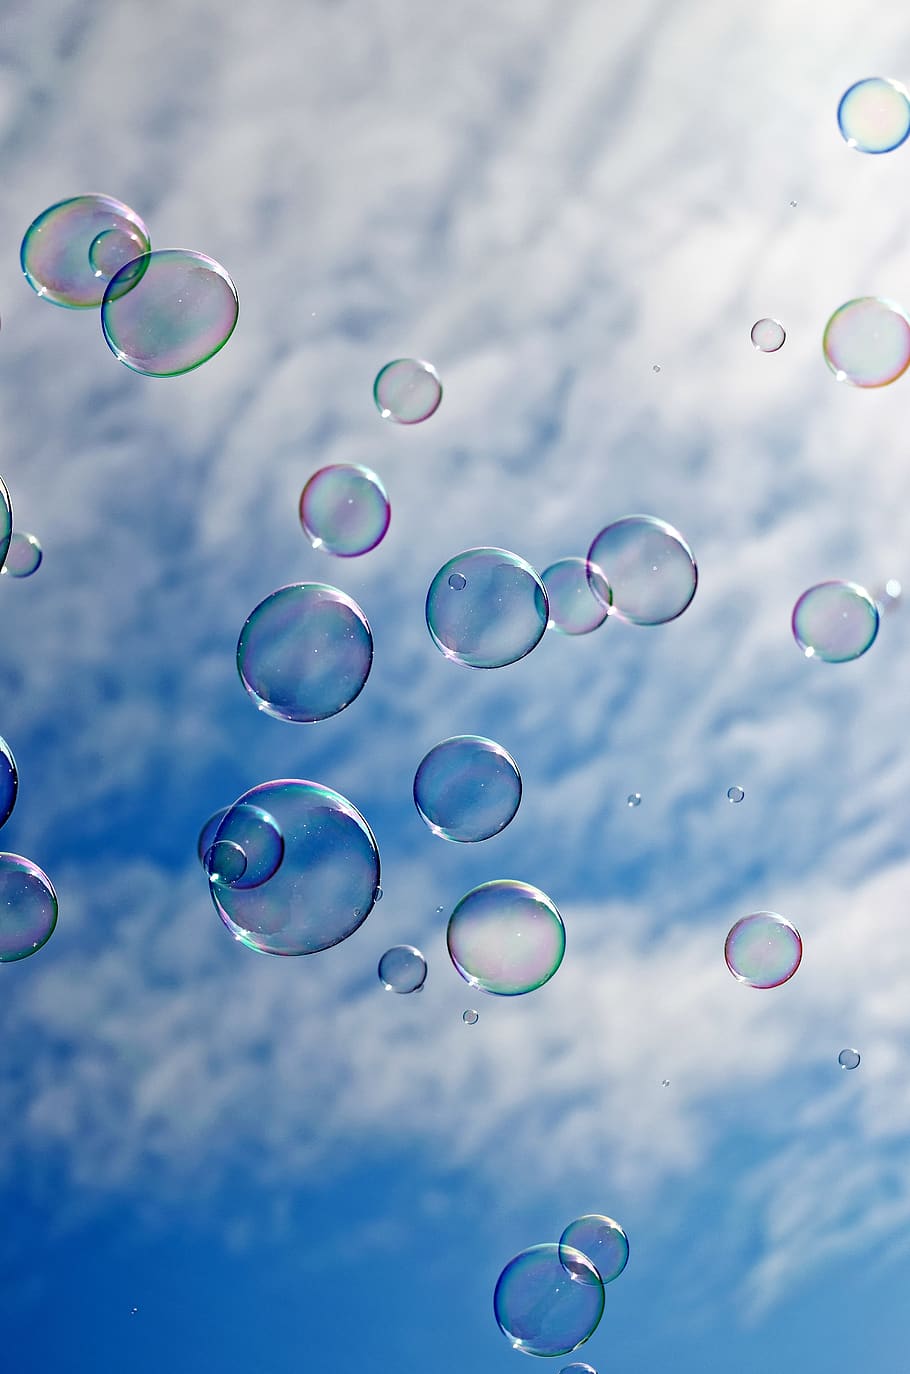 burbujas, transparente, el jabón, bola, flotante, aire, cielo, azul, nube, agradable